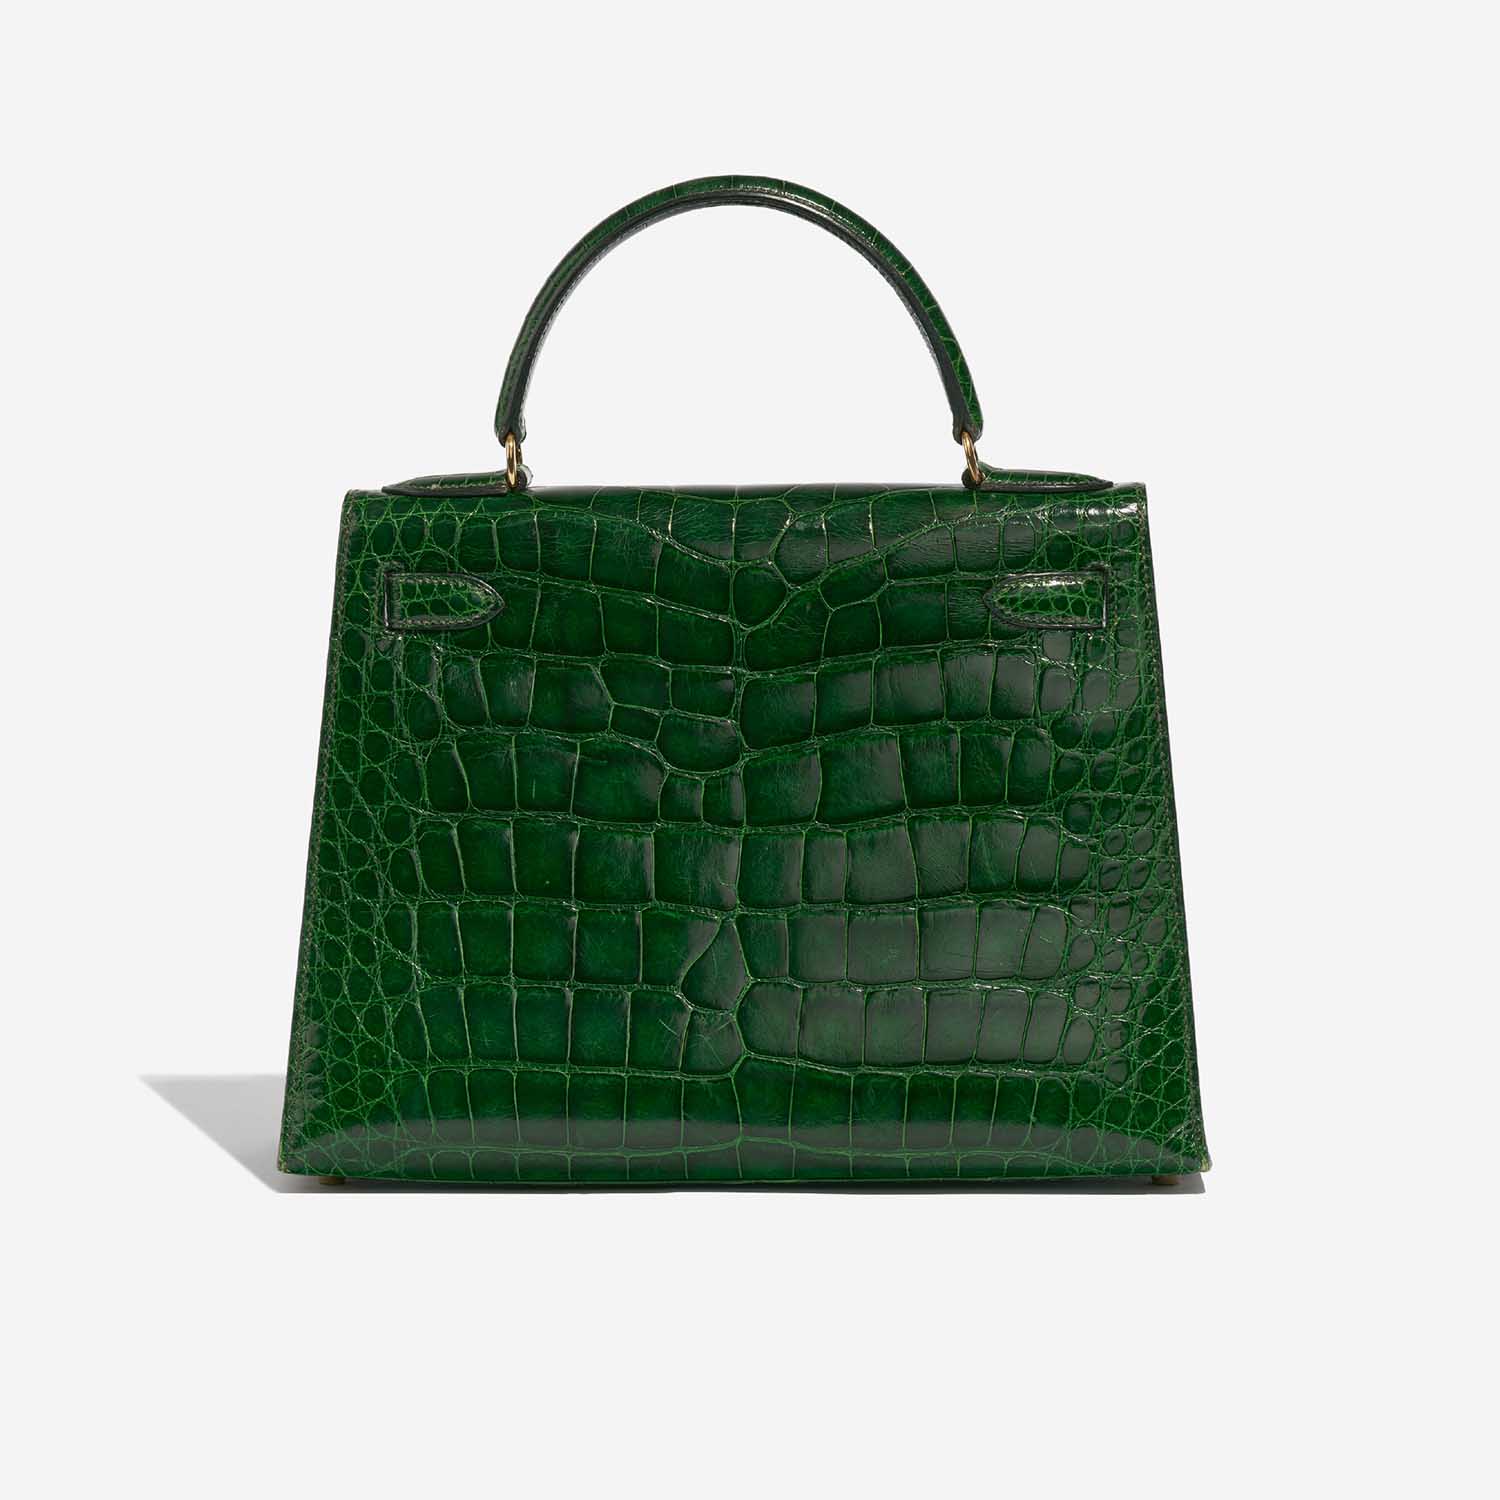 Pre-owned Hermès Tasche Kelly 28 Alligator Mississippiensis Vert Emeralde Green Back | Verkaufen Sie Ihre Designer-Tasche auf Saclab.com